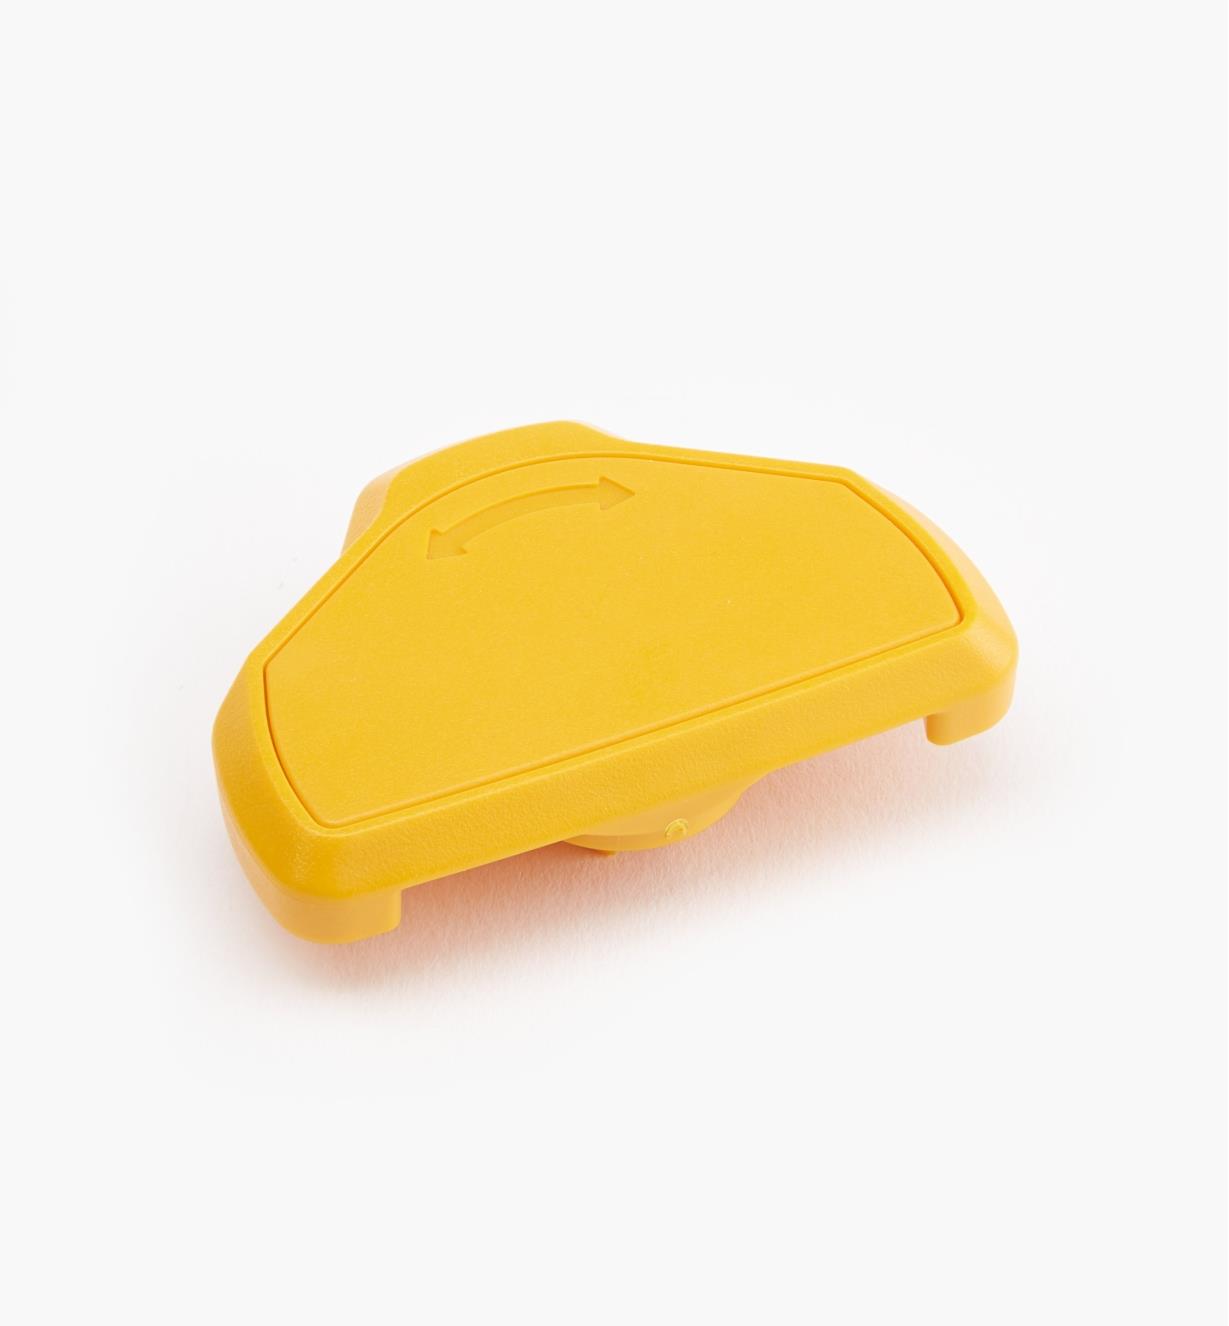 68K4633 - Loquet jaune, mini, l'unité